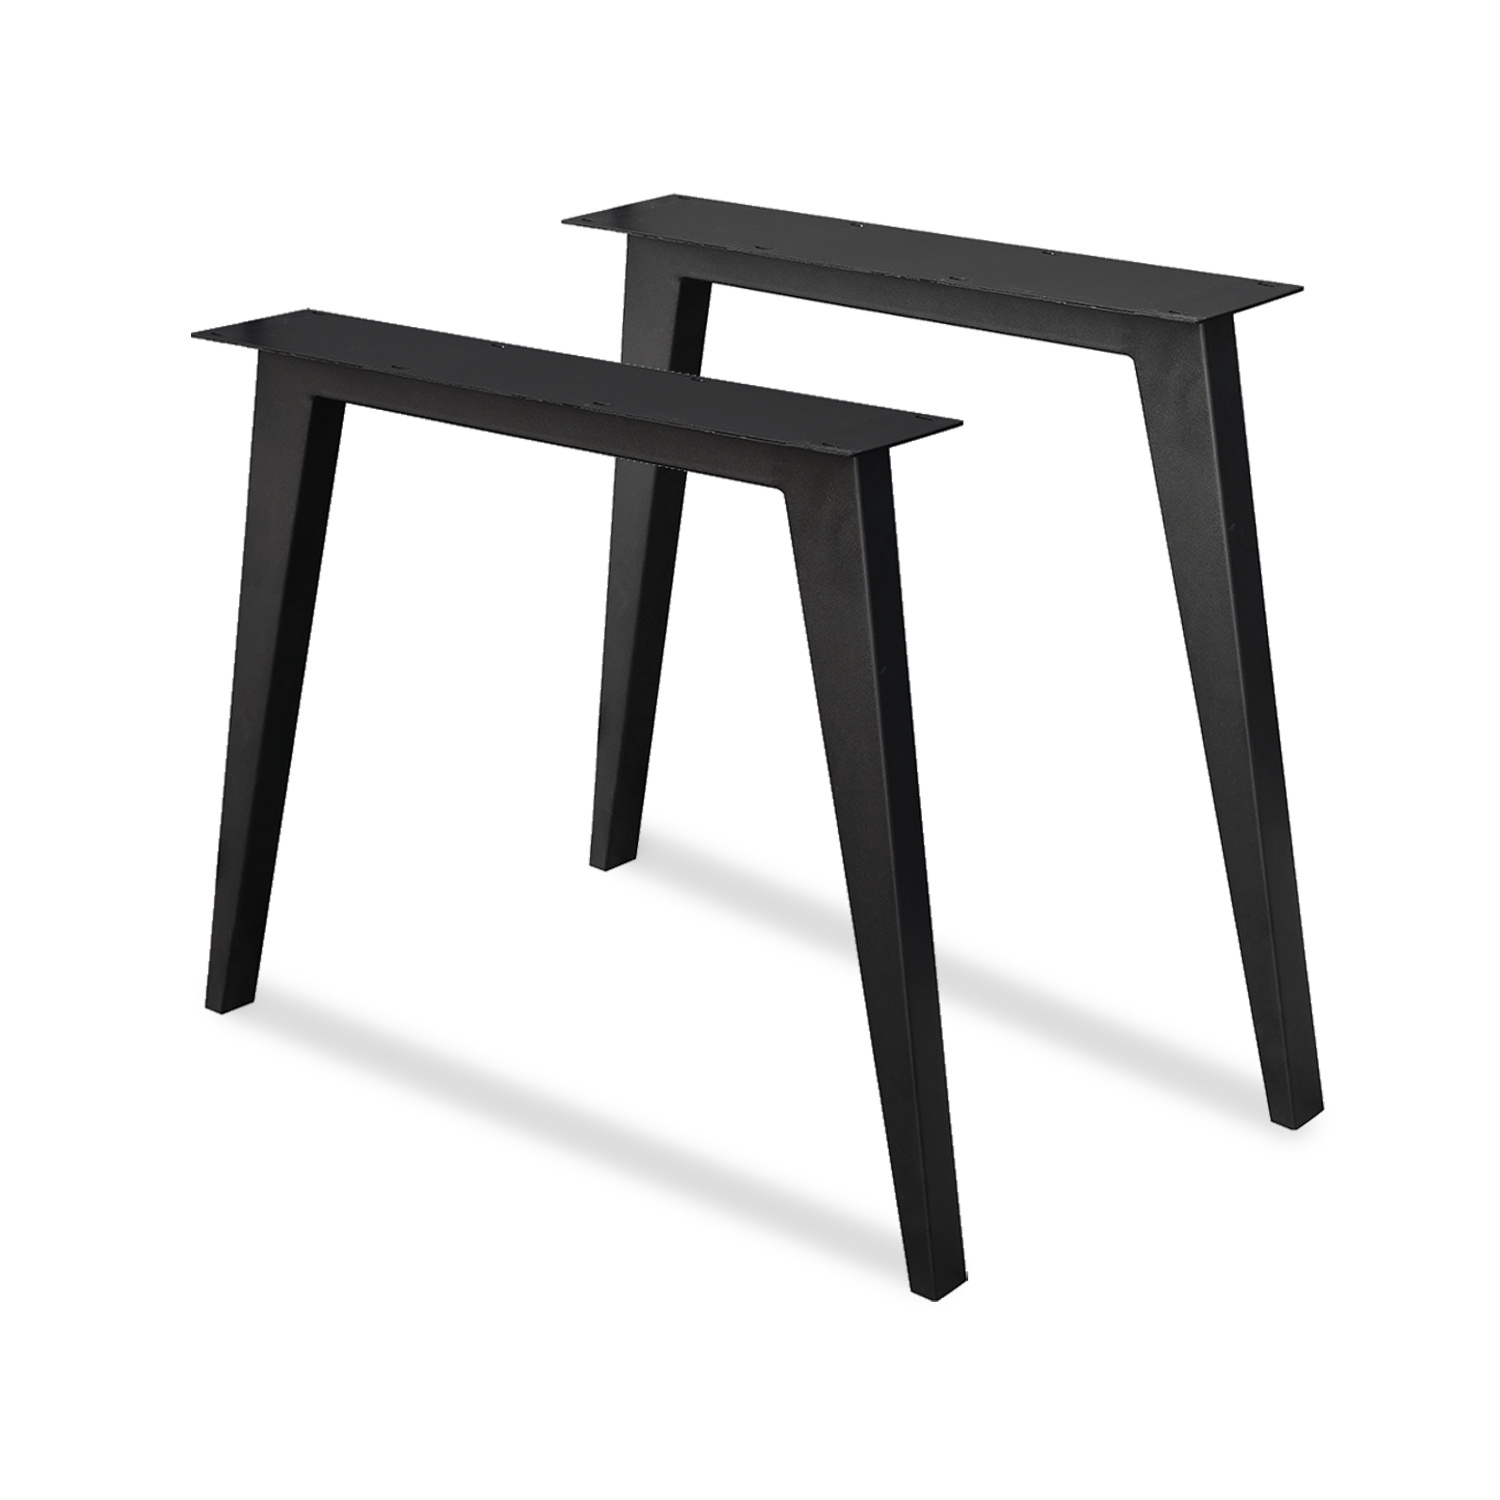  Stalen N-tafelpoten SIERLIJK (SET) - 78 cm breed - 72 cm hoog - N-poot GEPOEDERCOAT zwart